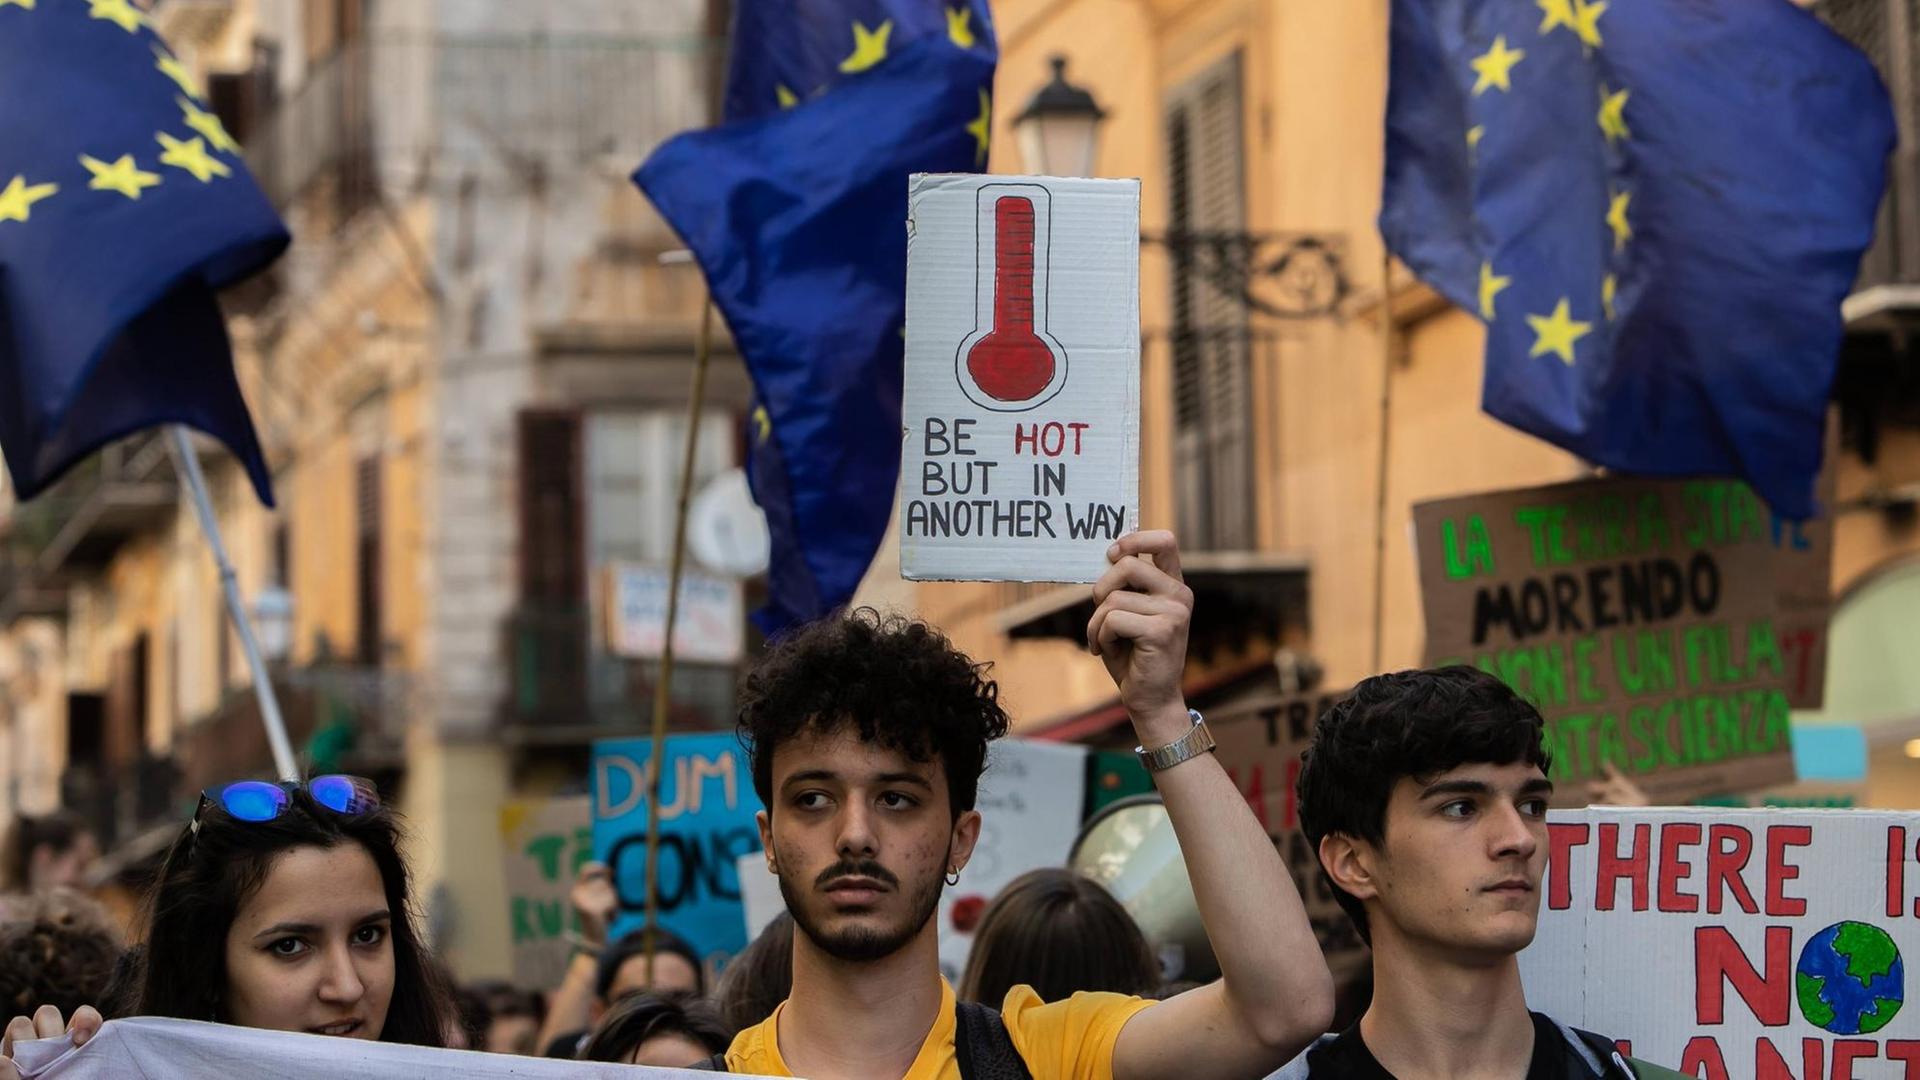 Junge Demonstranten bei Fridays for Future in der italienischen Stadt Palermo. Sie tragen Plakate gegen den Klimawandel und Europafahnen.